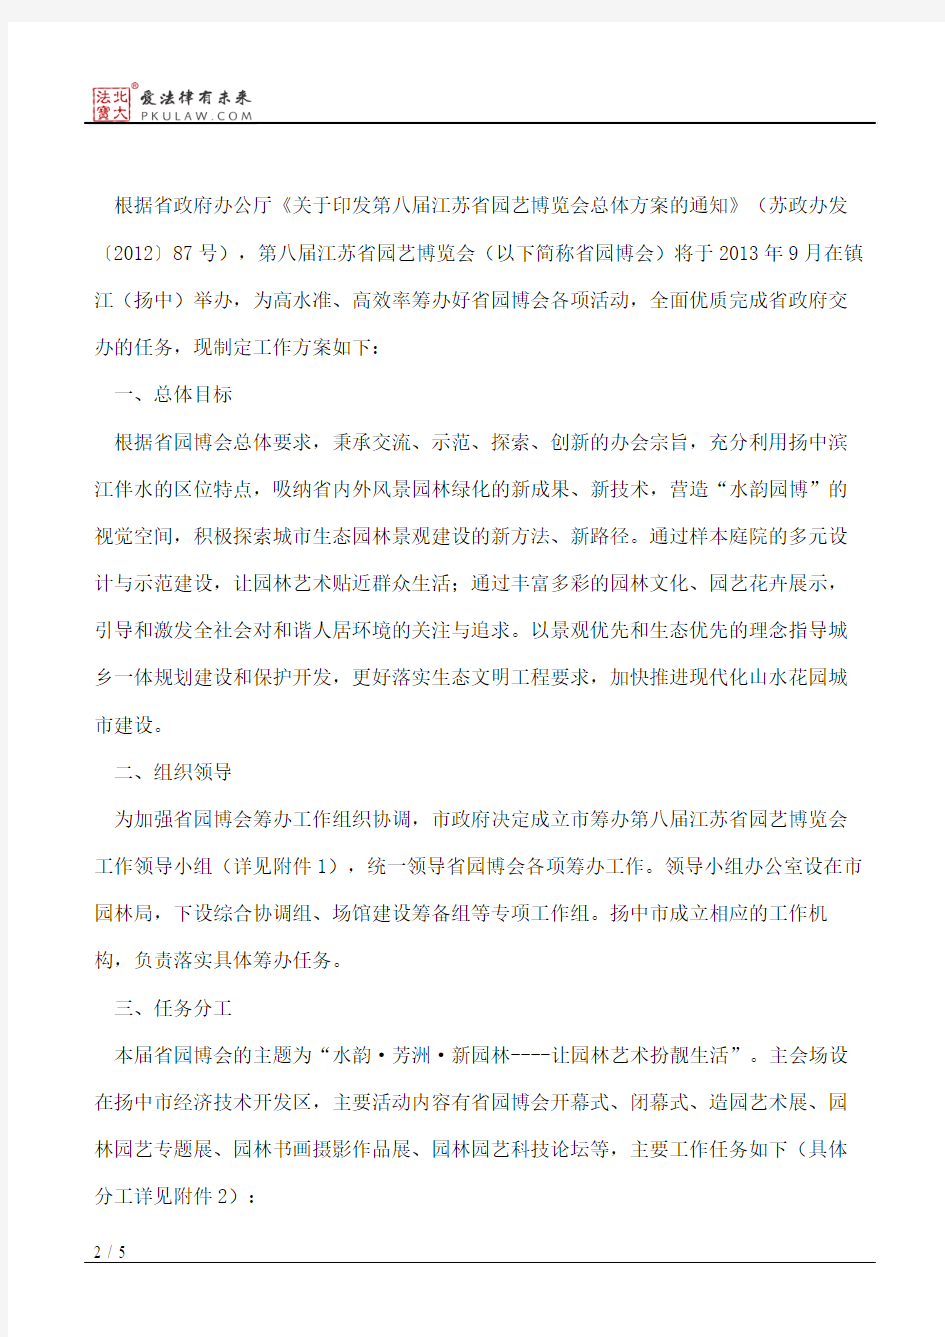 镇江市人民政府办公室关于印发镇江市承办第八届江苏省园艺博览会